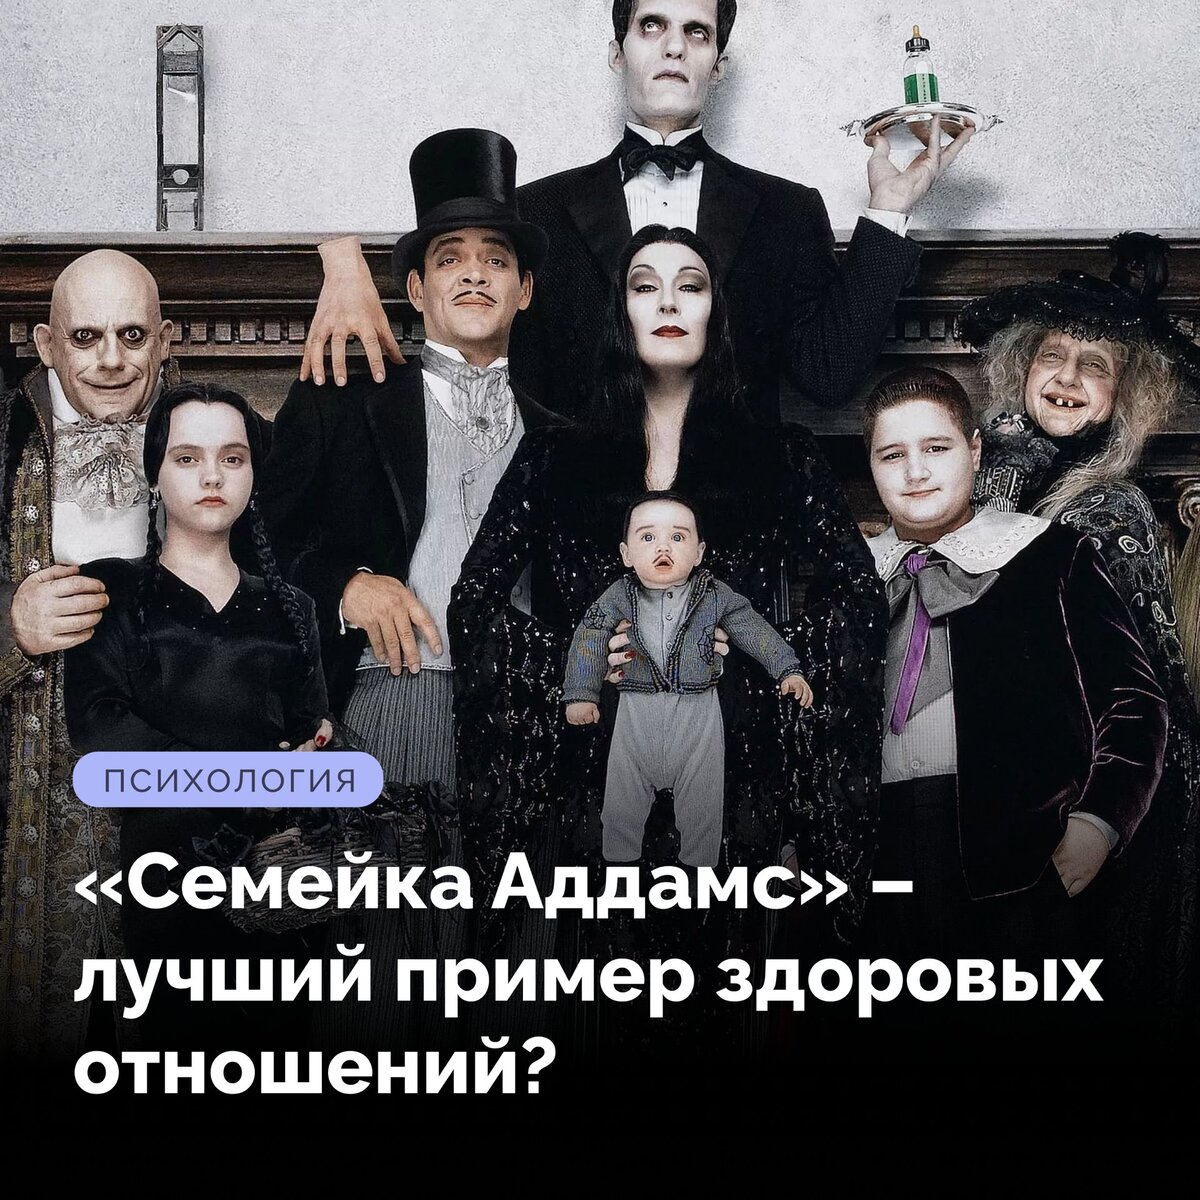 Семейка Аддамс XXX / The Addams Family XXX (2011)